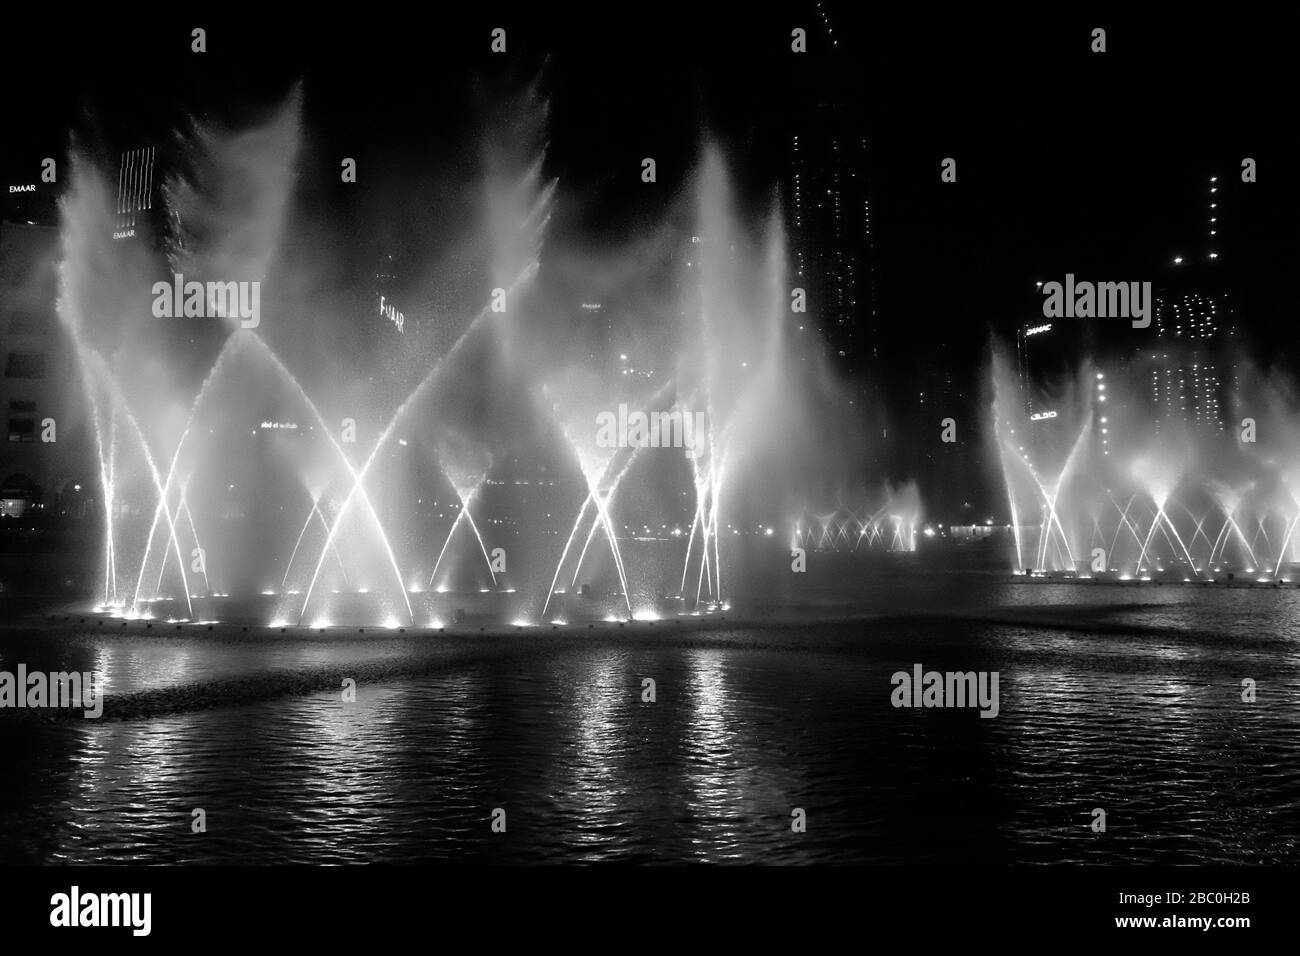 El sistema de fuentes coreografiadas más grande del mundo en Dubai, Emiratos Árabes Unidos. Foto de stock